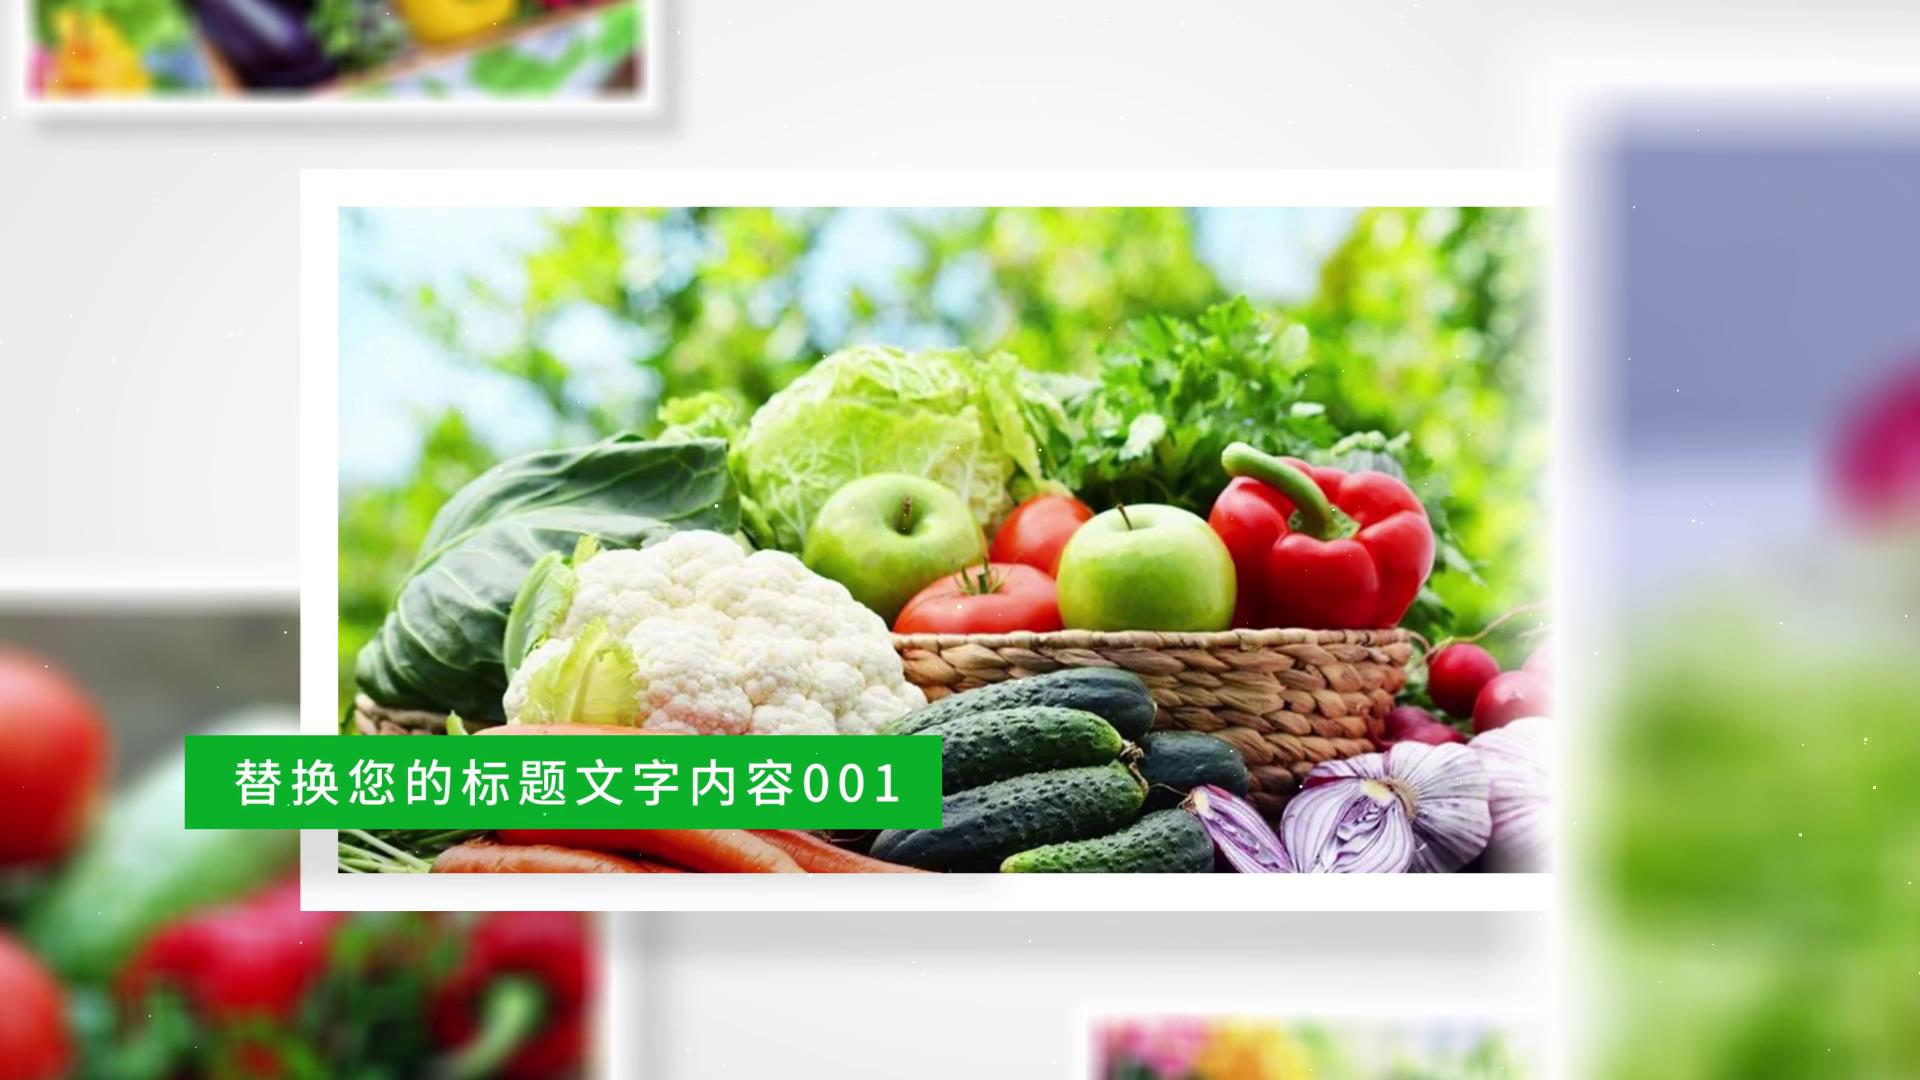 绿色生态有机蔬菜图片ae模板